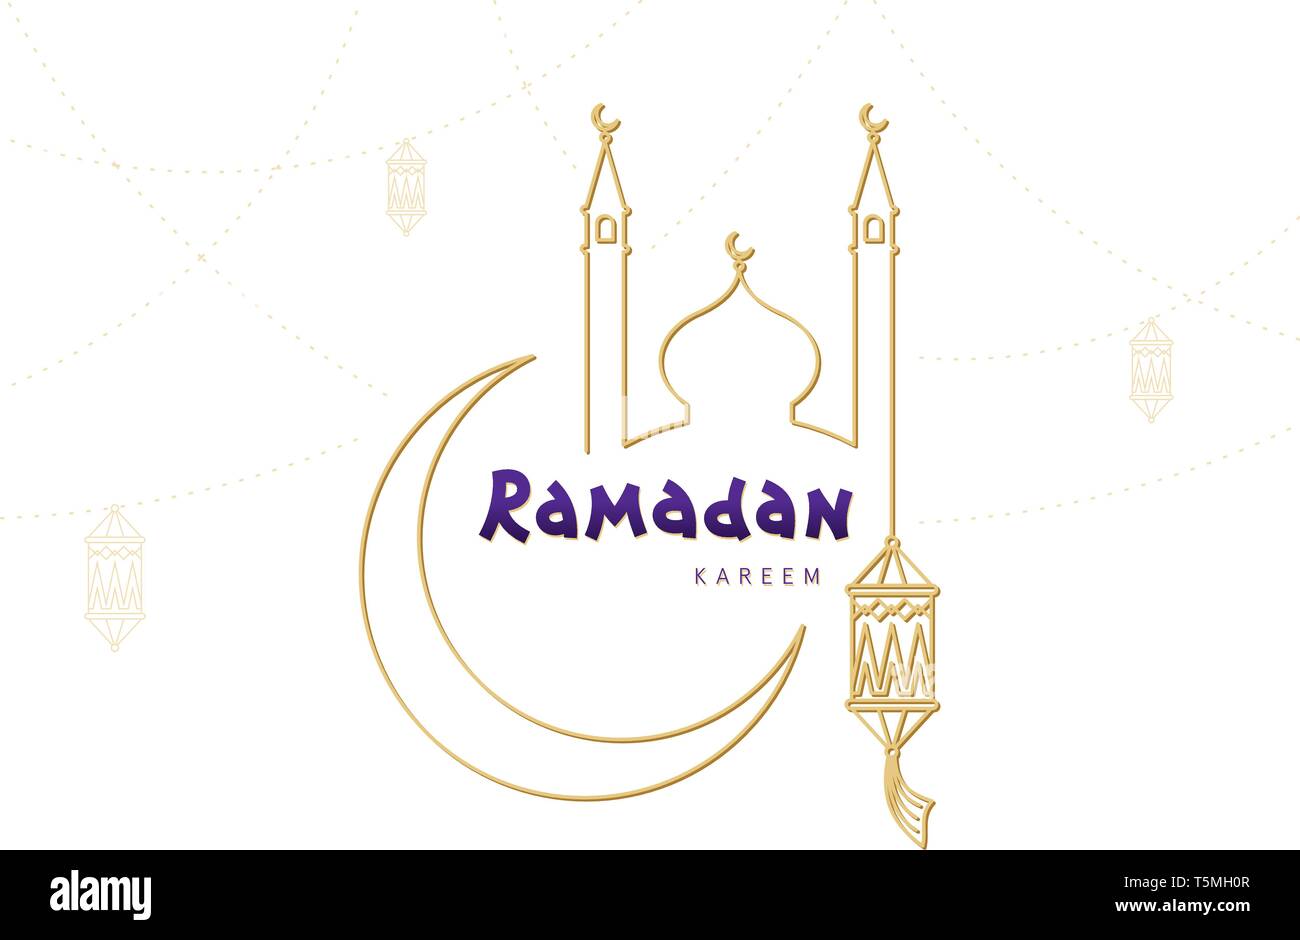 Arabisch islamische Kalligraphie text Ramadan Kareem mit Halbmond, Laterne, Moschee. Ramadan Mubarak grußzeile Vektor Plakat für muslimische Gemeinschaft f Stock Vektor